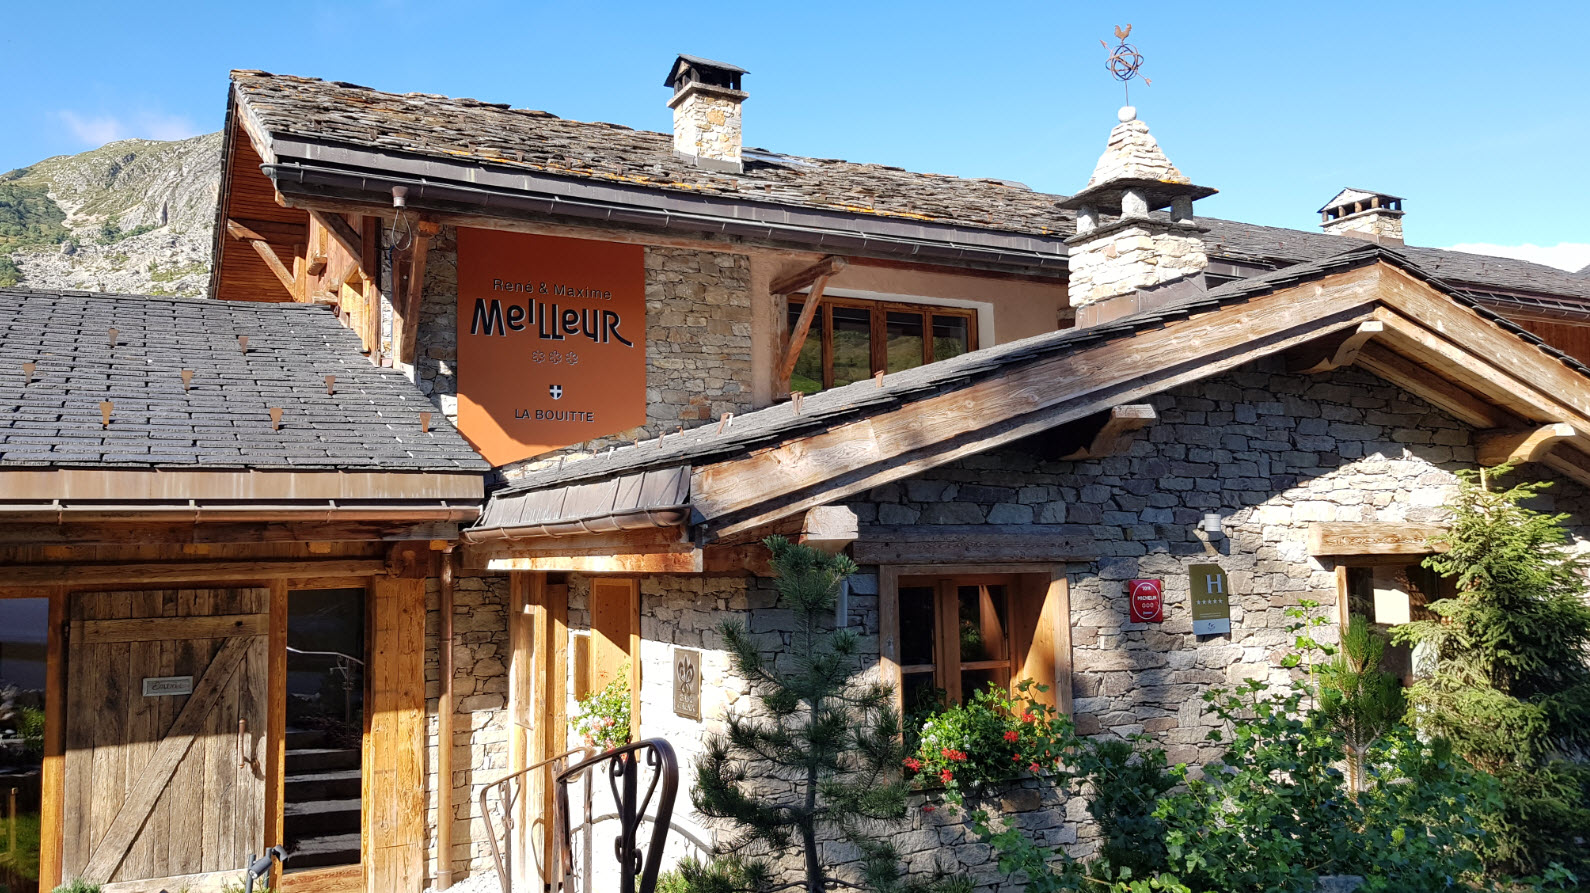 Village authentique Rhone Alpes